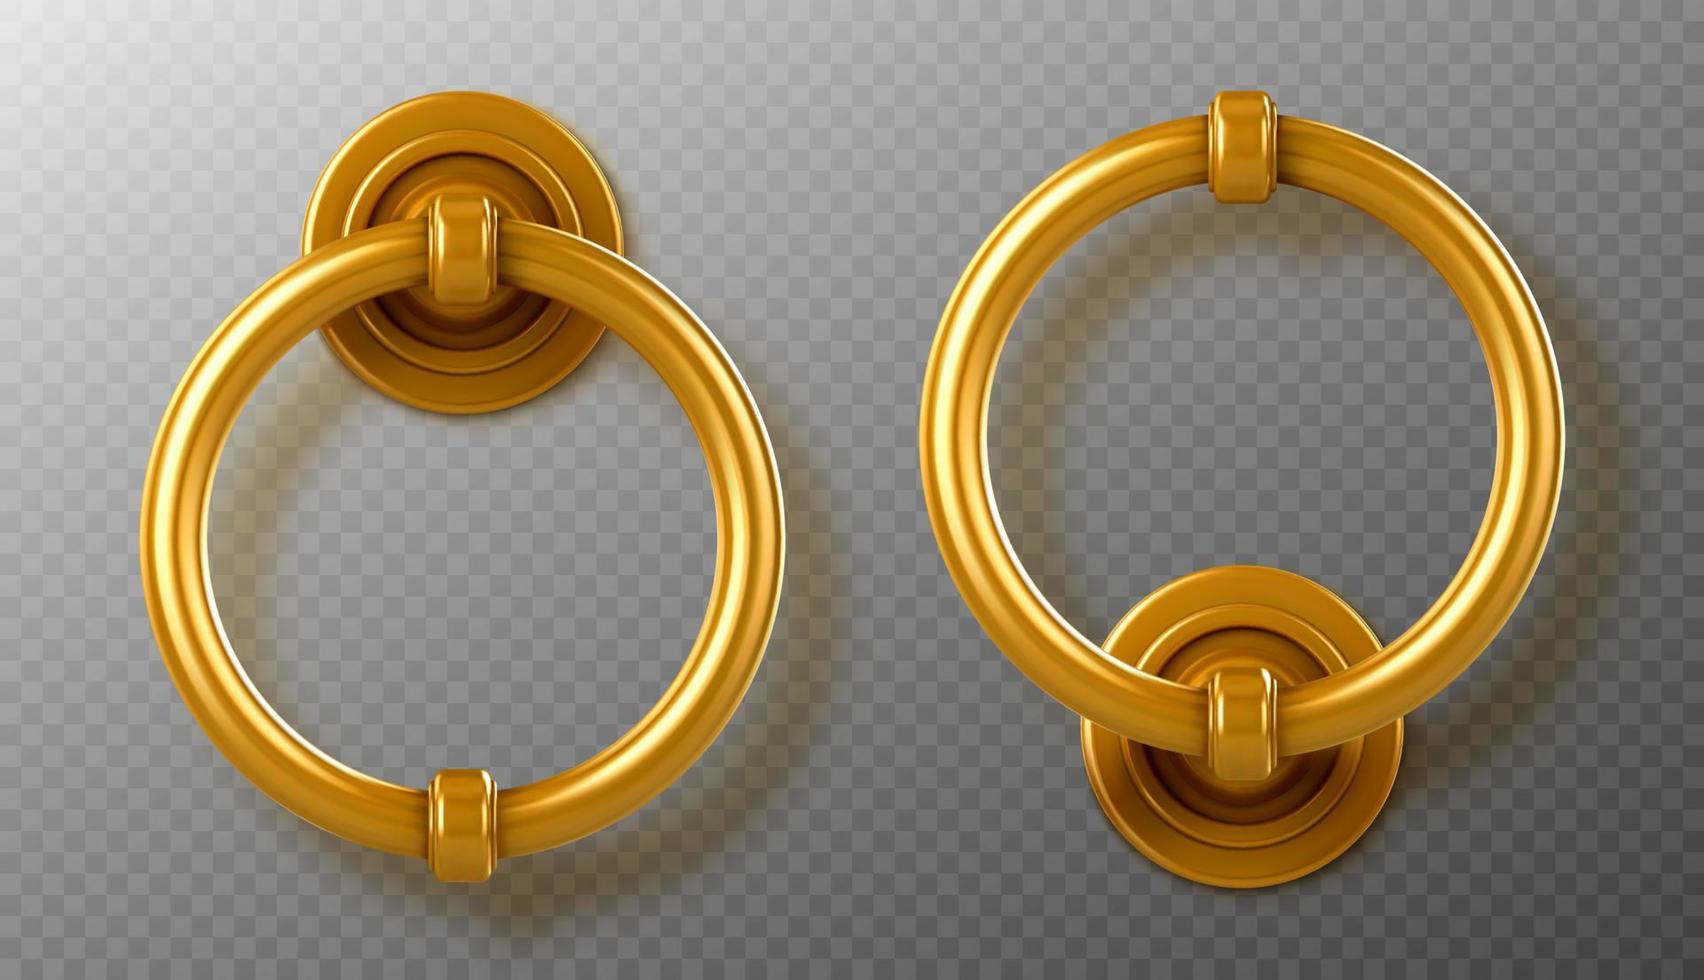 Realistic gold door knocker handles, ring knobs vector